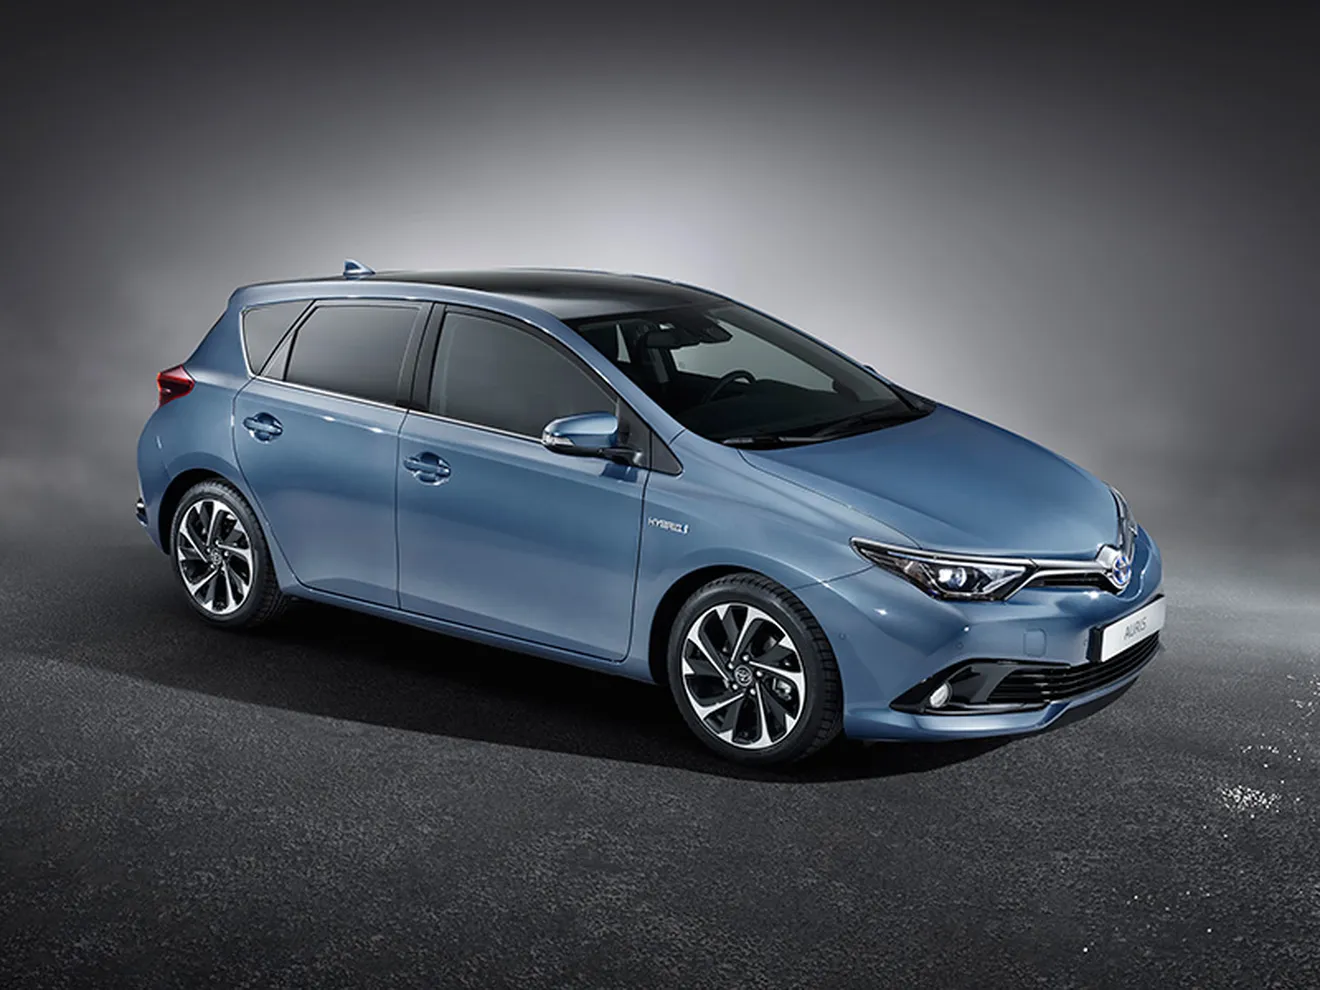 Toyota Auris 2015, un nuevo diseño que estará en Ginebra